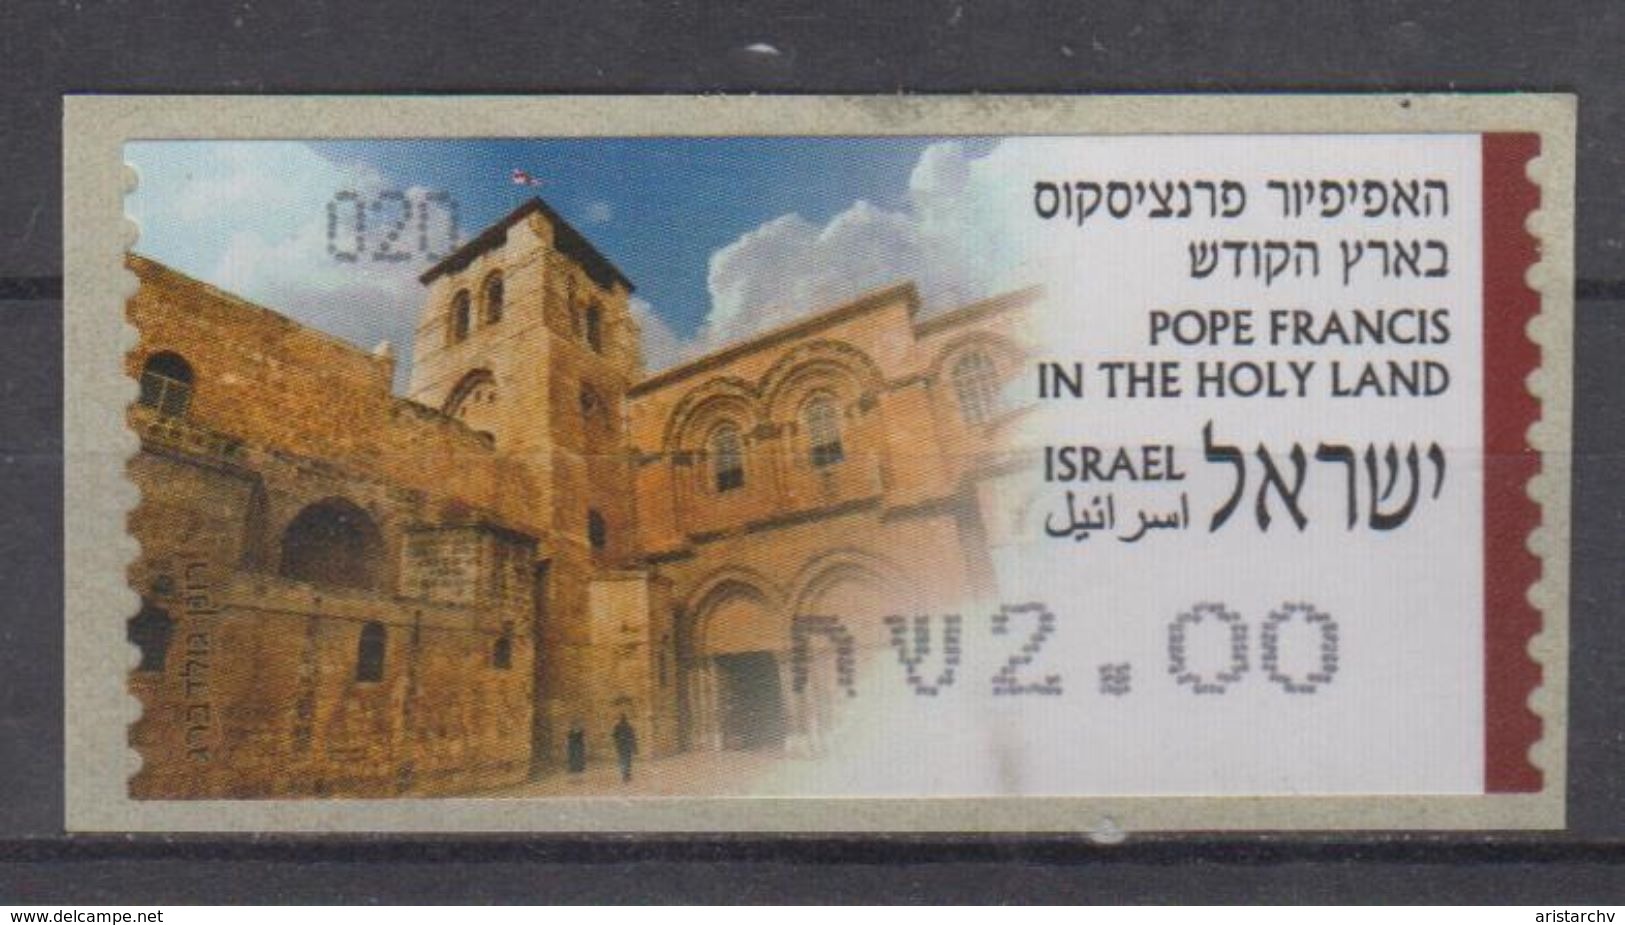 ISRAEL 2014 KLUSSENDORF ATM POPE FRANCIS IN THE HOLY LAND NUMBER 020 - Vignettes D'affranchissement (Frama)